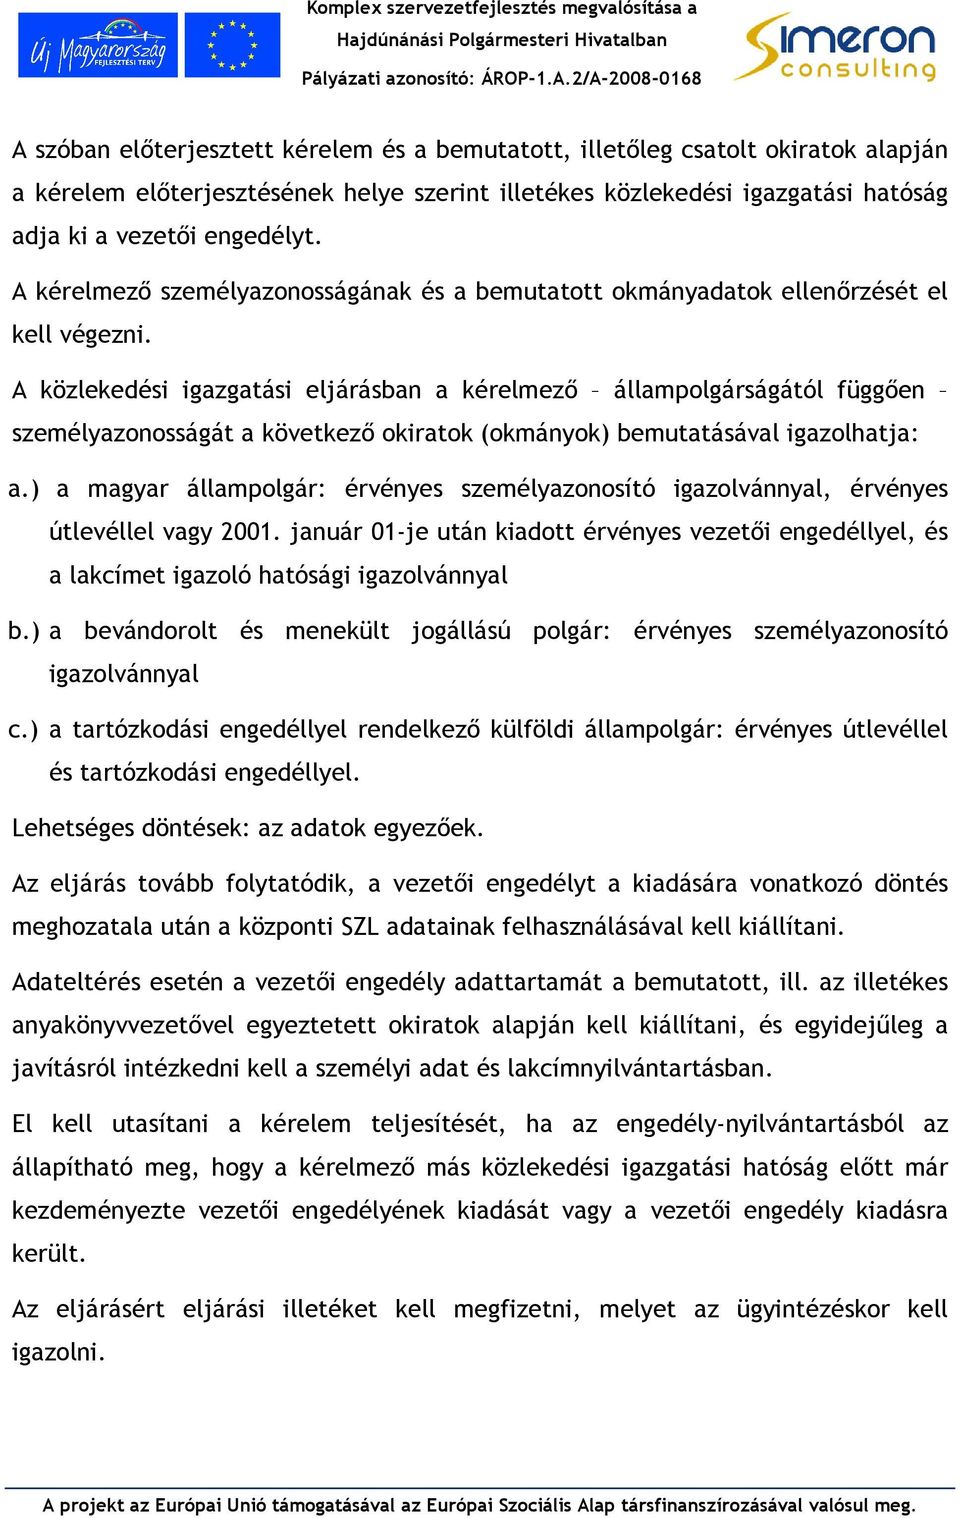 A közlekedés gazgatás eljárásba a kérelmezı állampolgárságától függıe személyazoosságát a következı okratok (okmáyok) bemutatásával gazolhatja: a.